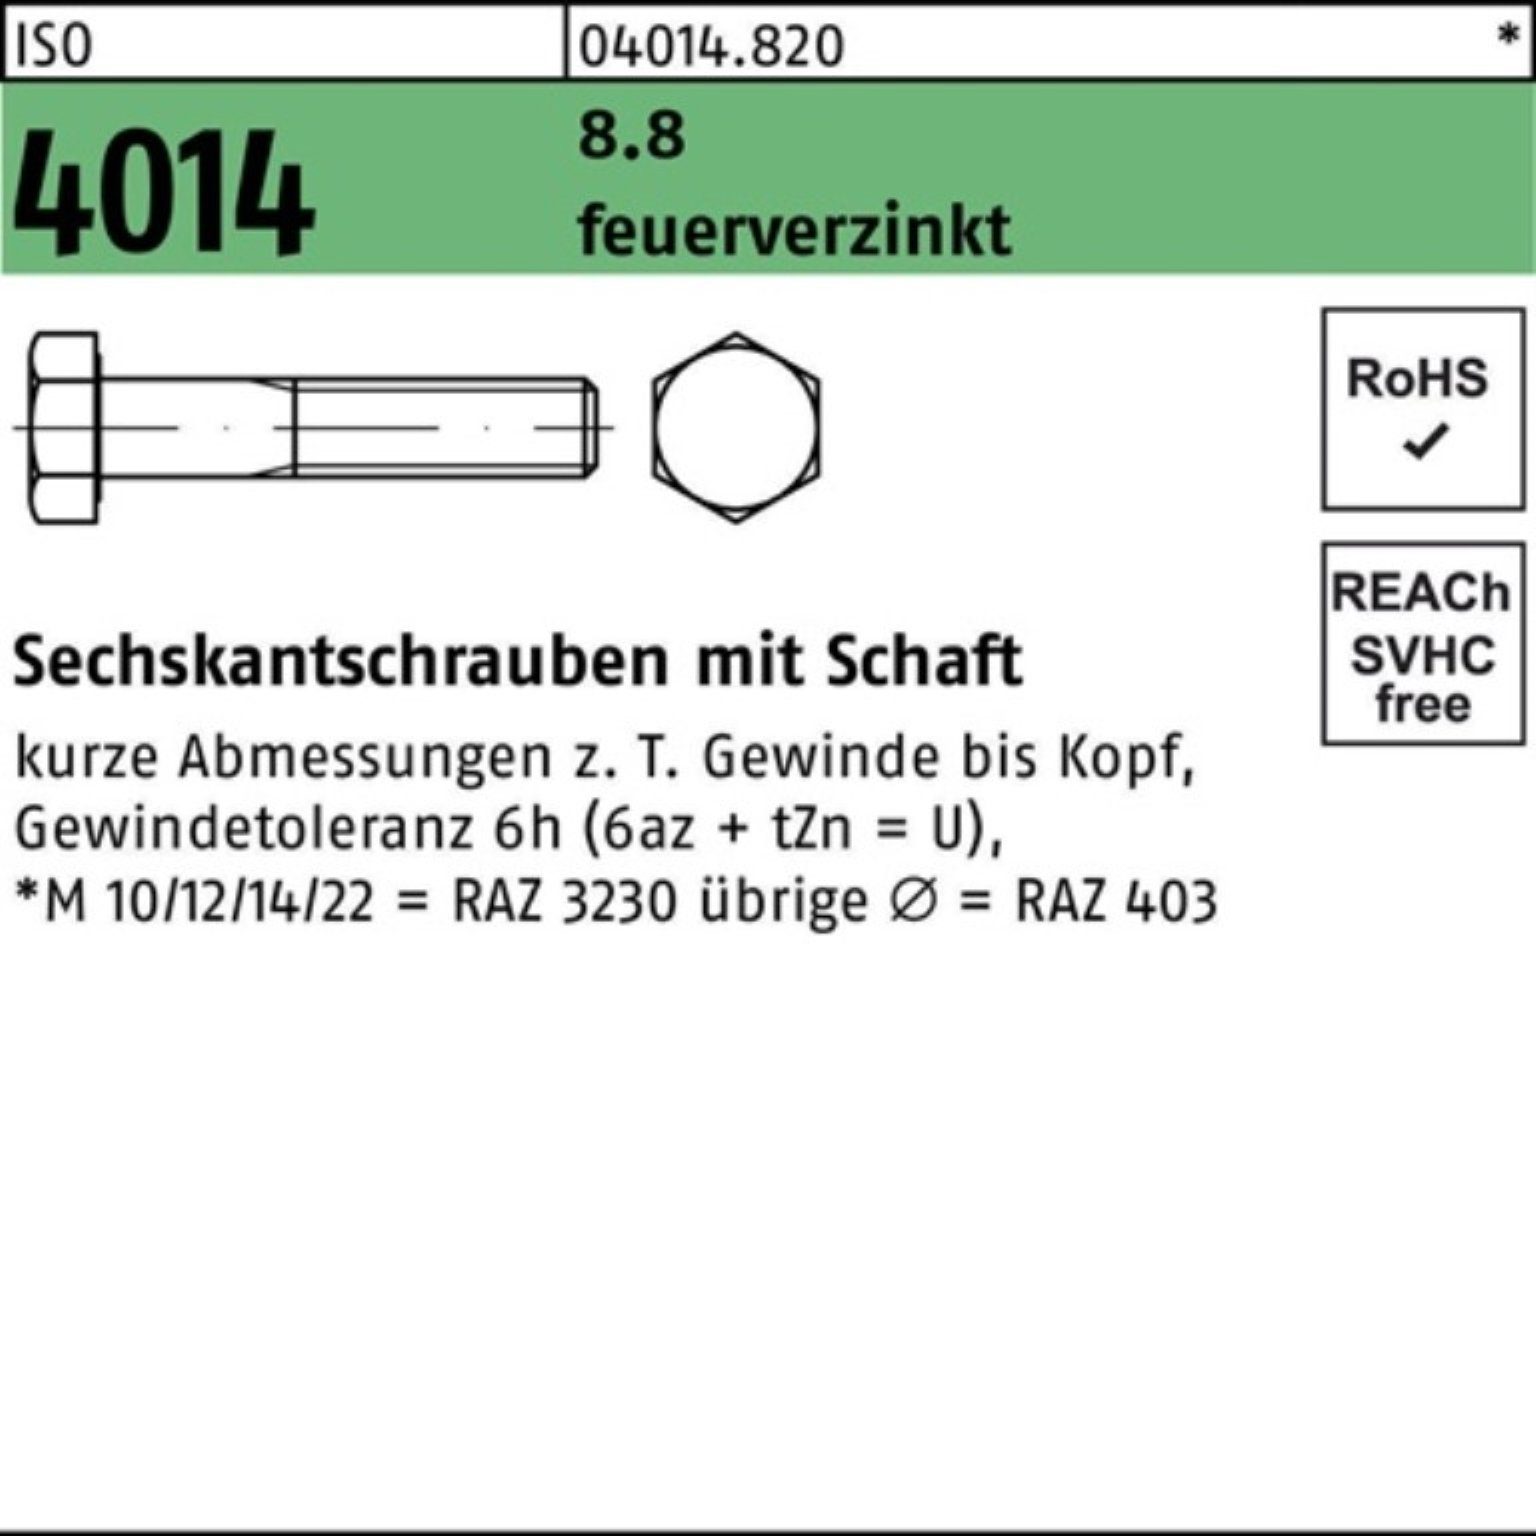 Bufab Sechskantschraube 8.8 100er 4014 ISO feuerverz. Pack 90 Sechskantschraube M30x 1 Schaft